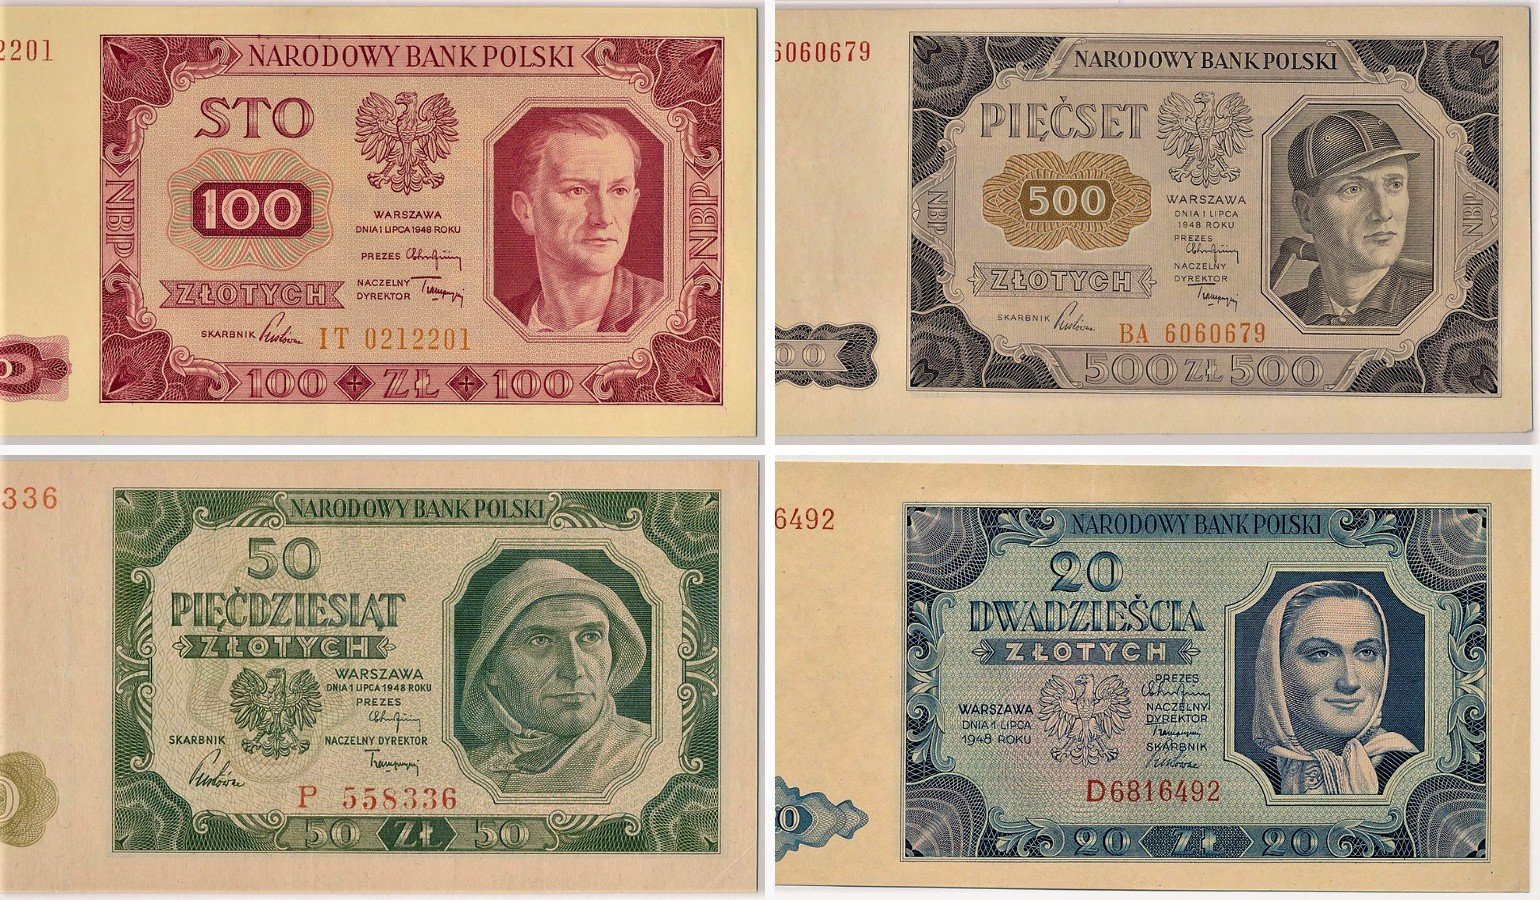 z 1950 r. wielu Polakom zrujnowała życie. Dziś banknoty z "ludźmi pracy" chętnie zbierane. są warte [CENY] | Gazeta Krakowska